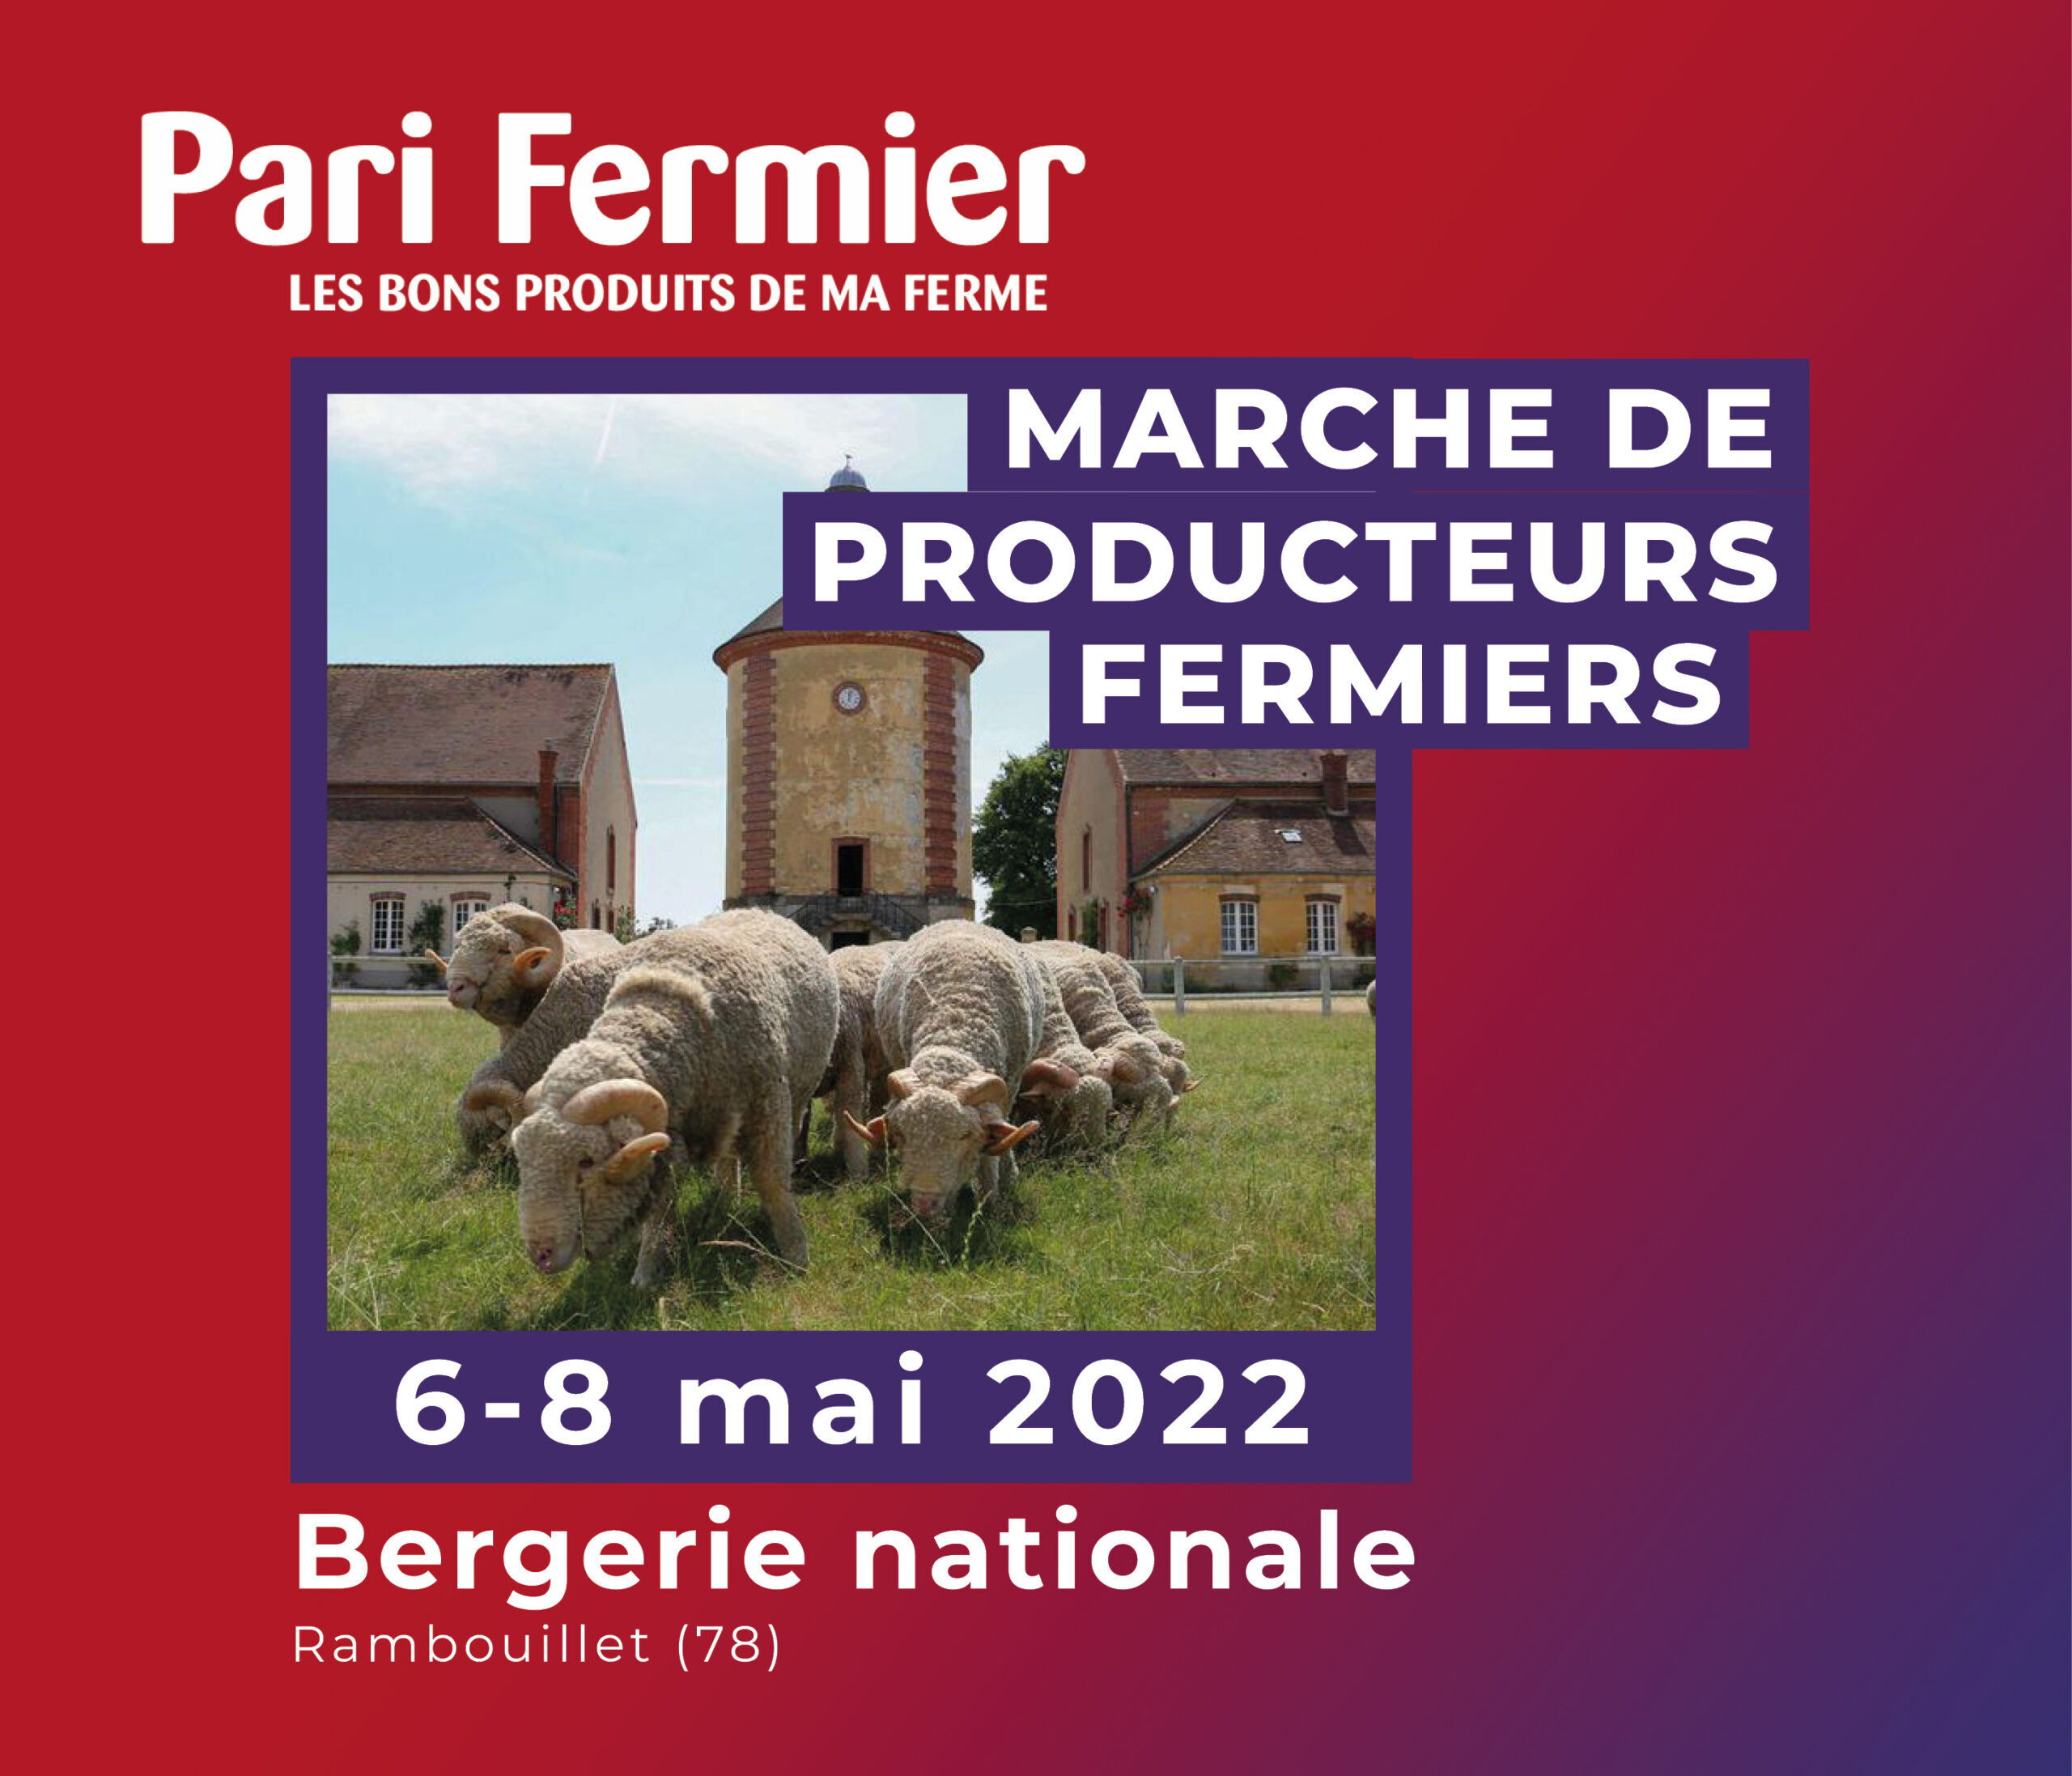 MARCHÉ PARI FERMIER – BERGERIE NATIONALE DE RAMBOUILLET